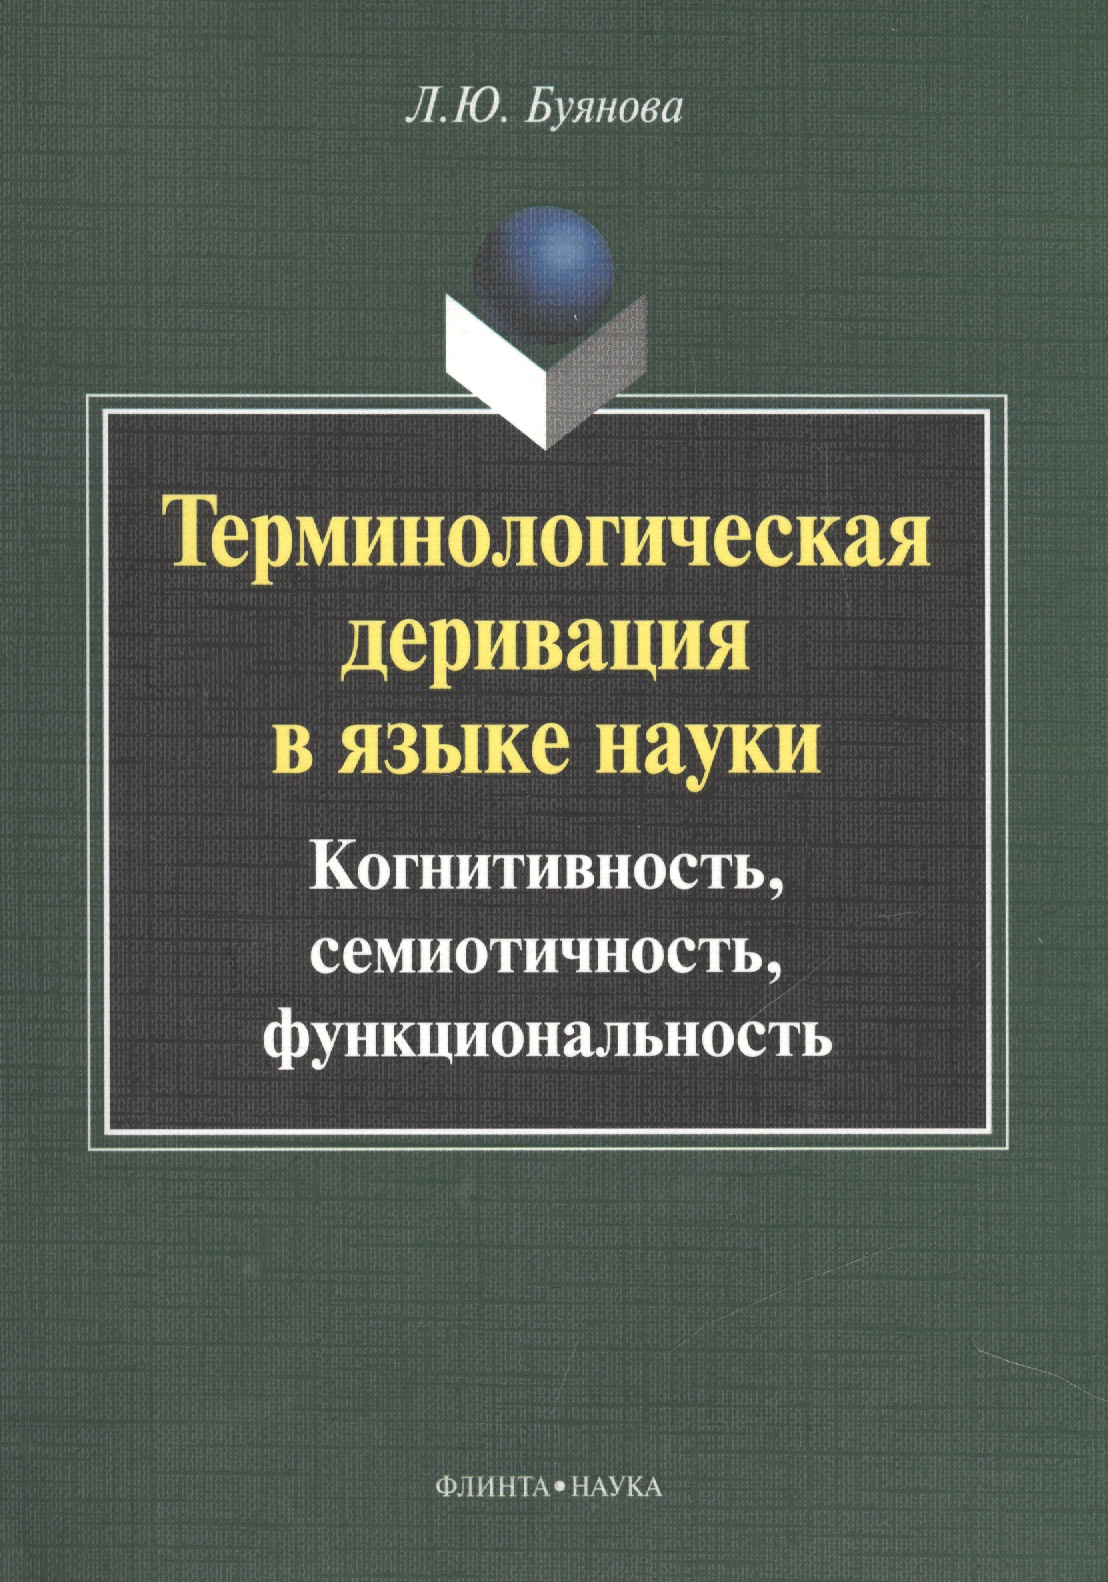 Терминологическая деривация в языке науки… Монография (2 изд) (м) Буянова